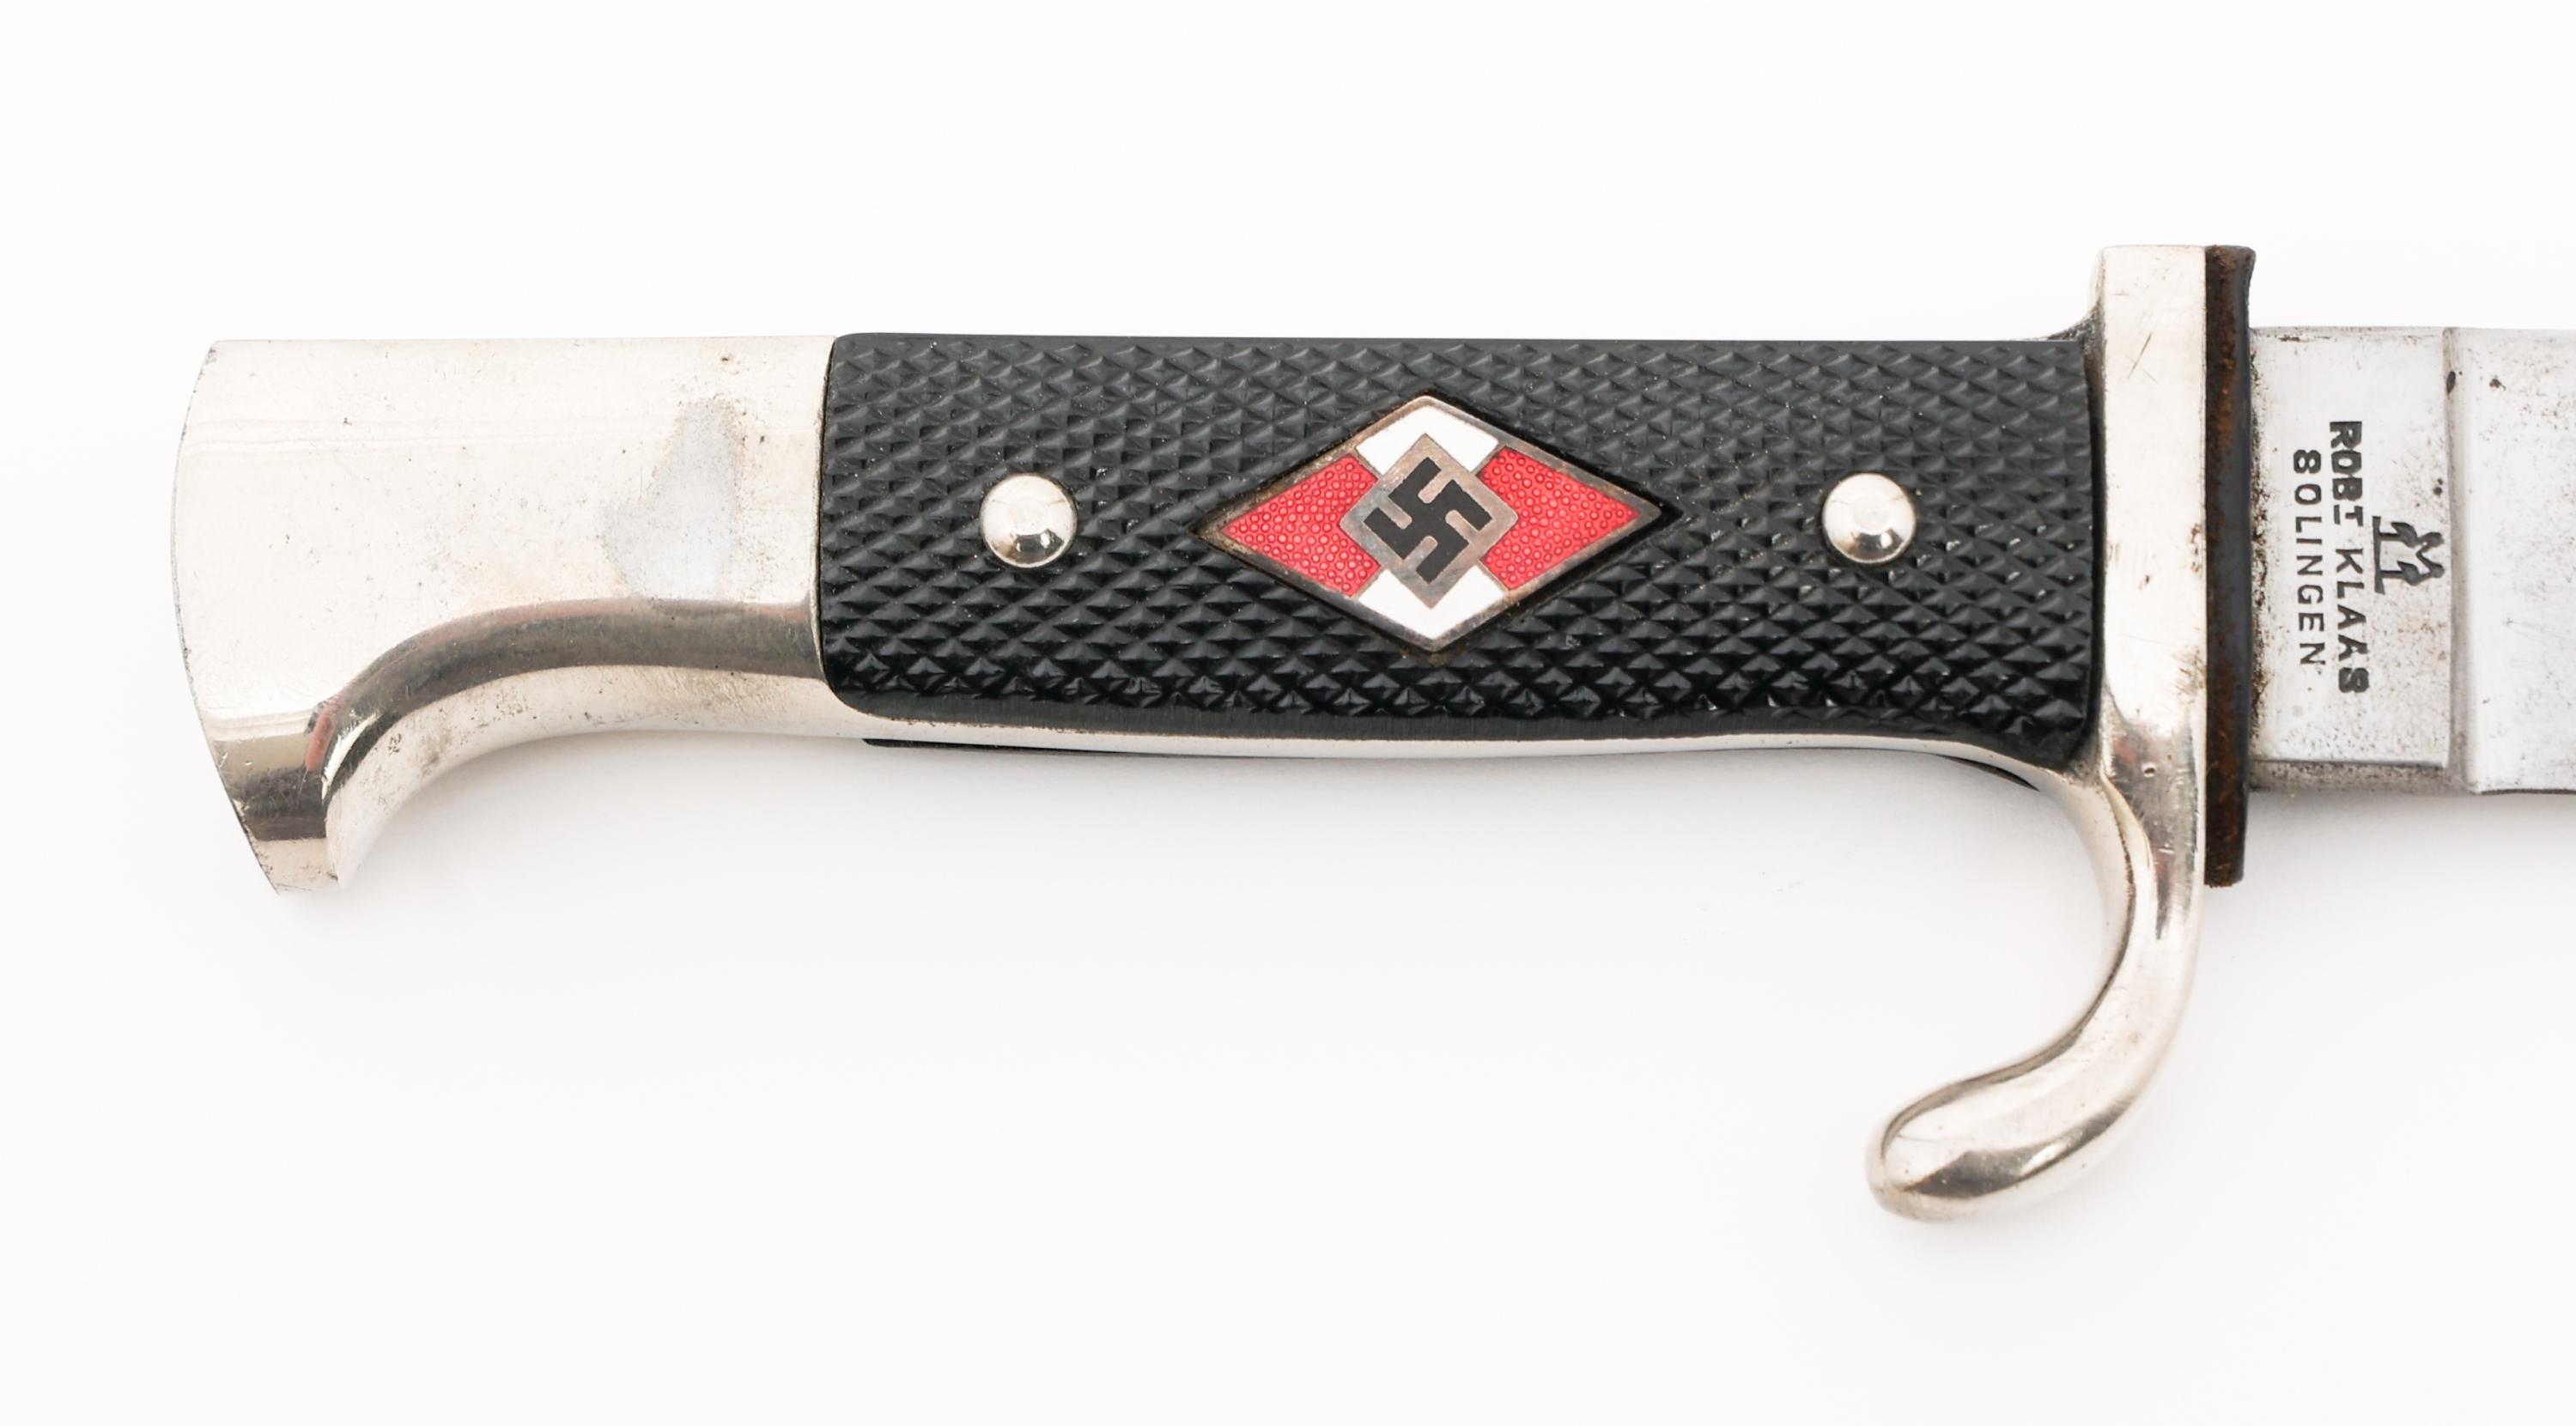 WWII GERMAN HITLER YOUTH KNIFE by ROBERT KLAAS